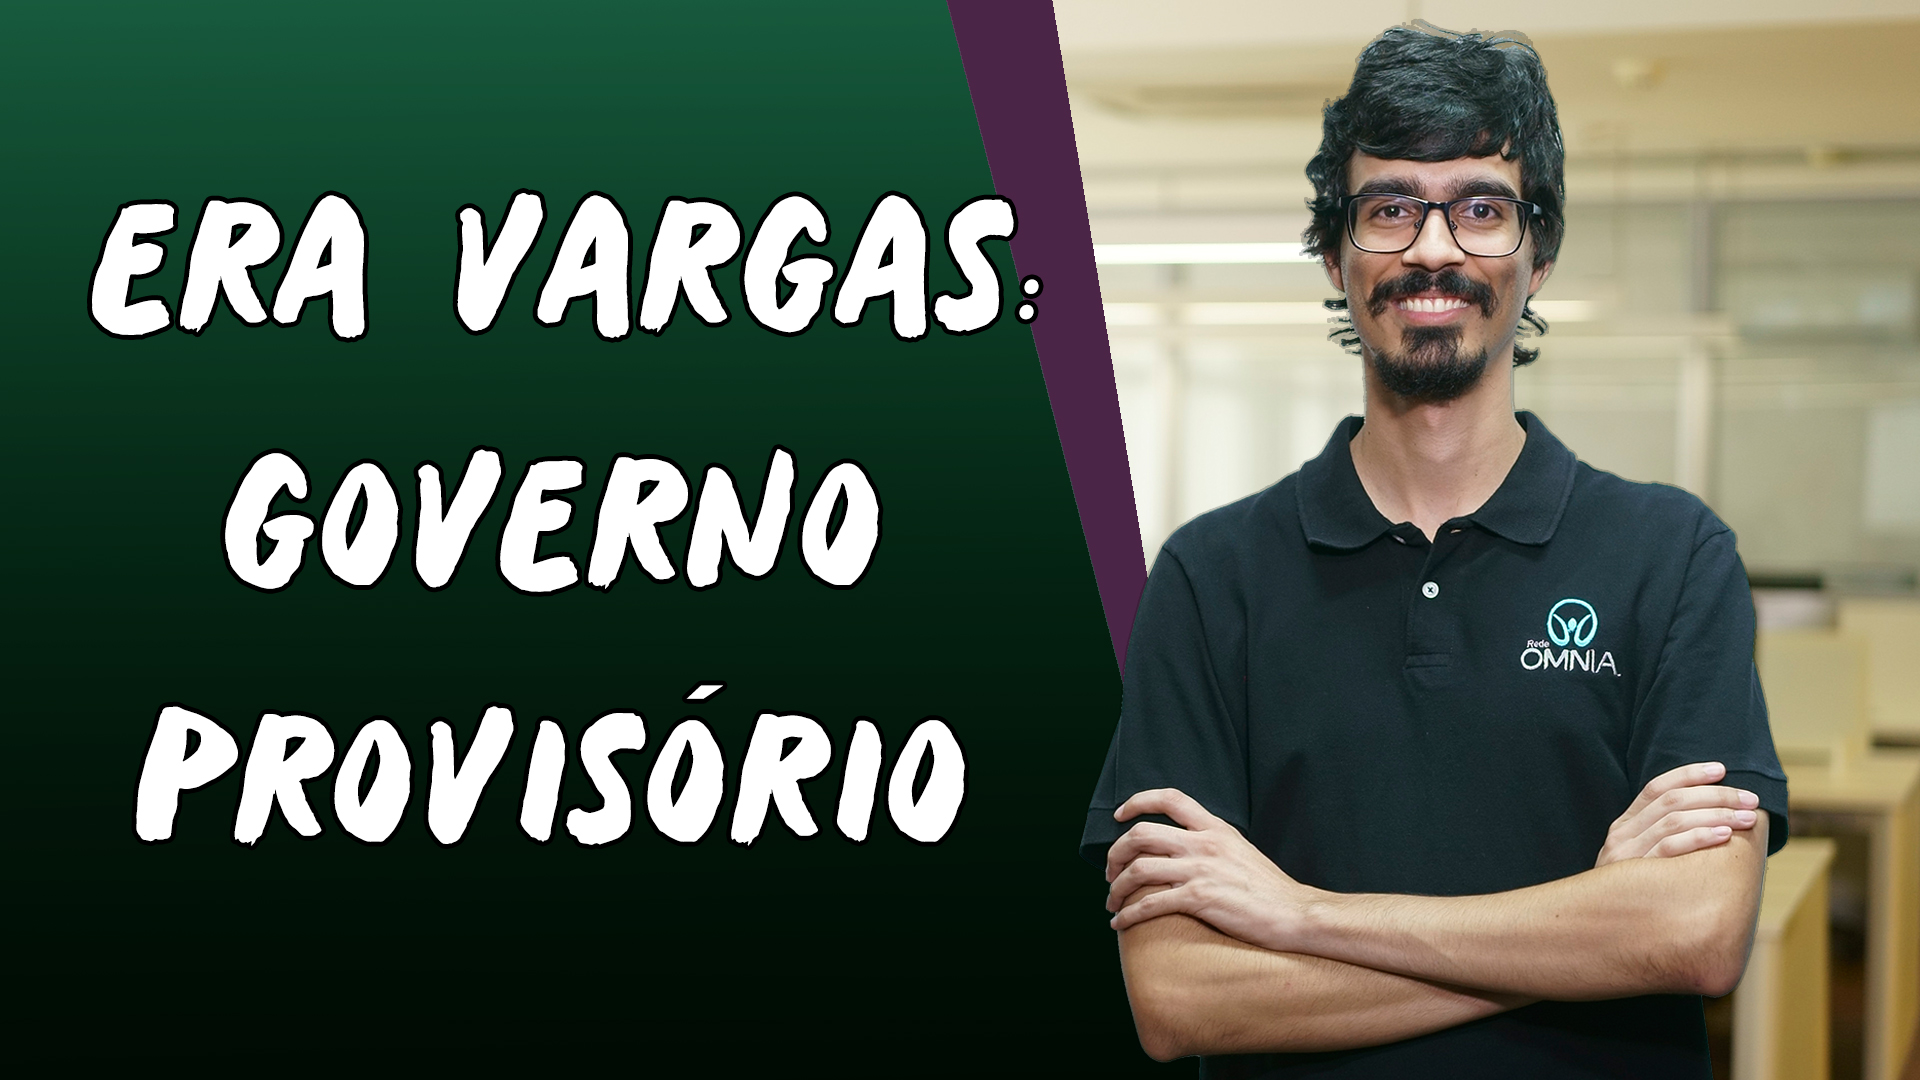 "Era Vargas: Governo Provisório" escrito sobre fundo verde ao lado da imagem do professor